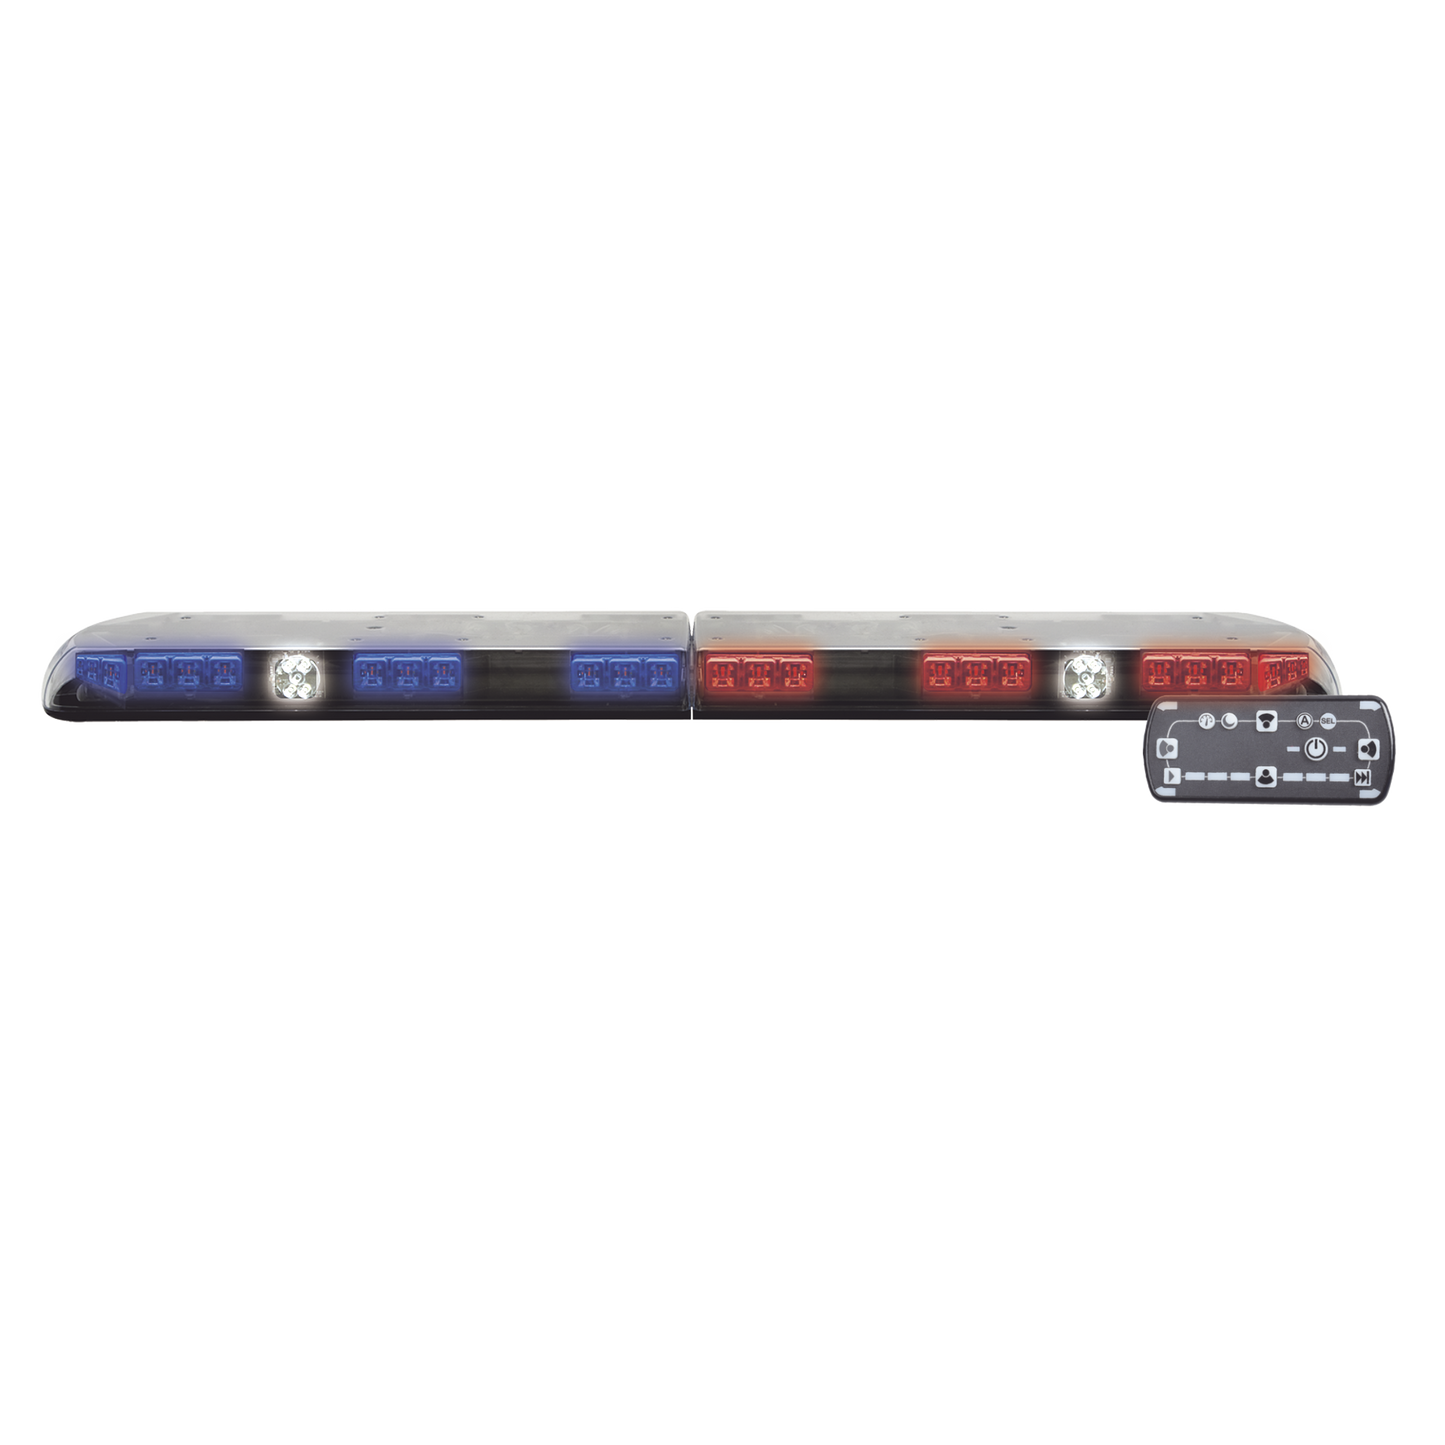 Barra de luces Vantage PRO Ultra Brillante con 64 poderosos LEDs última generación, color Rojo/Azul